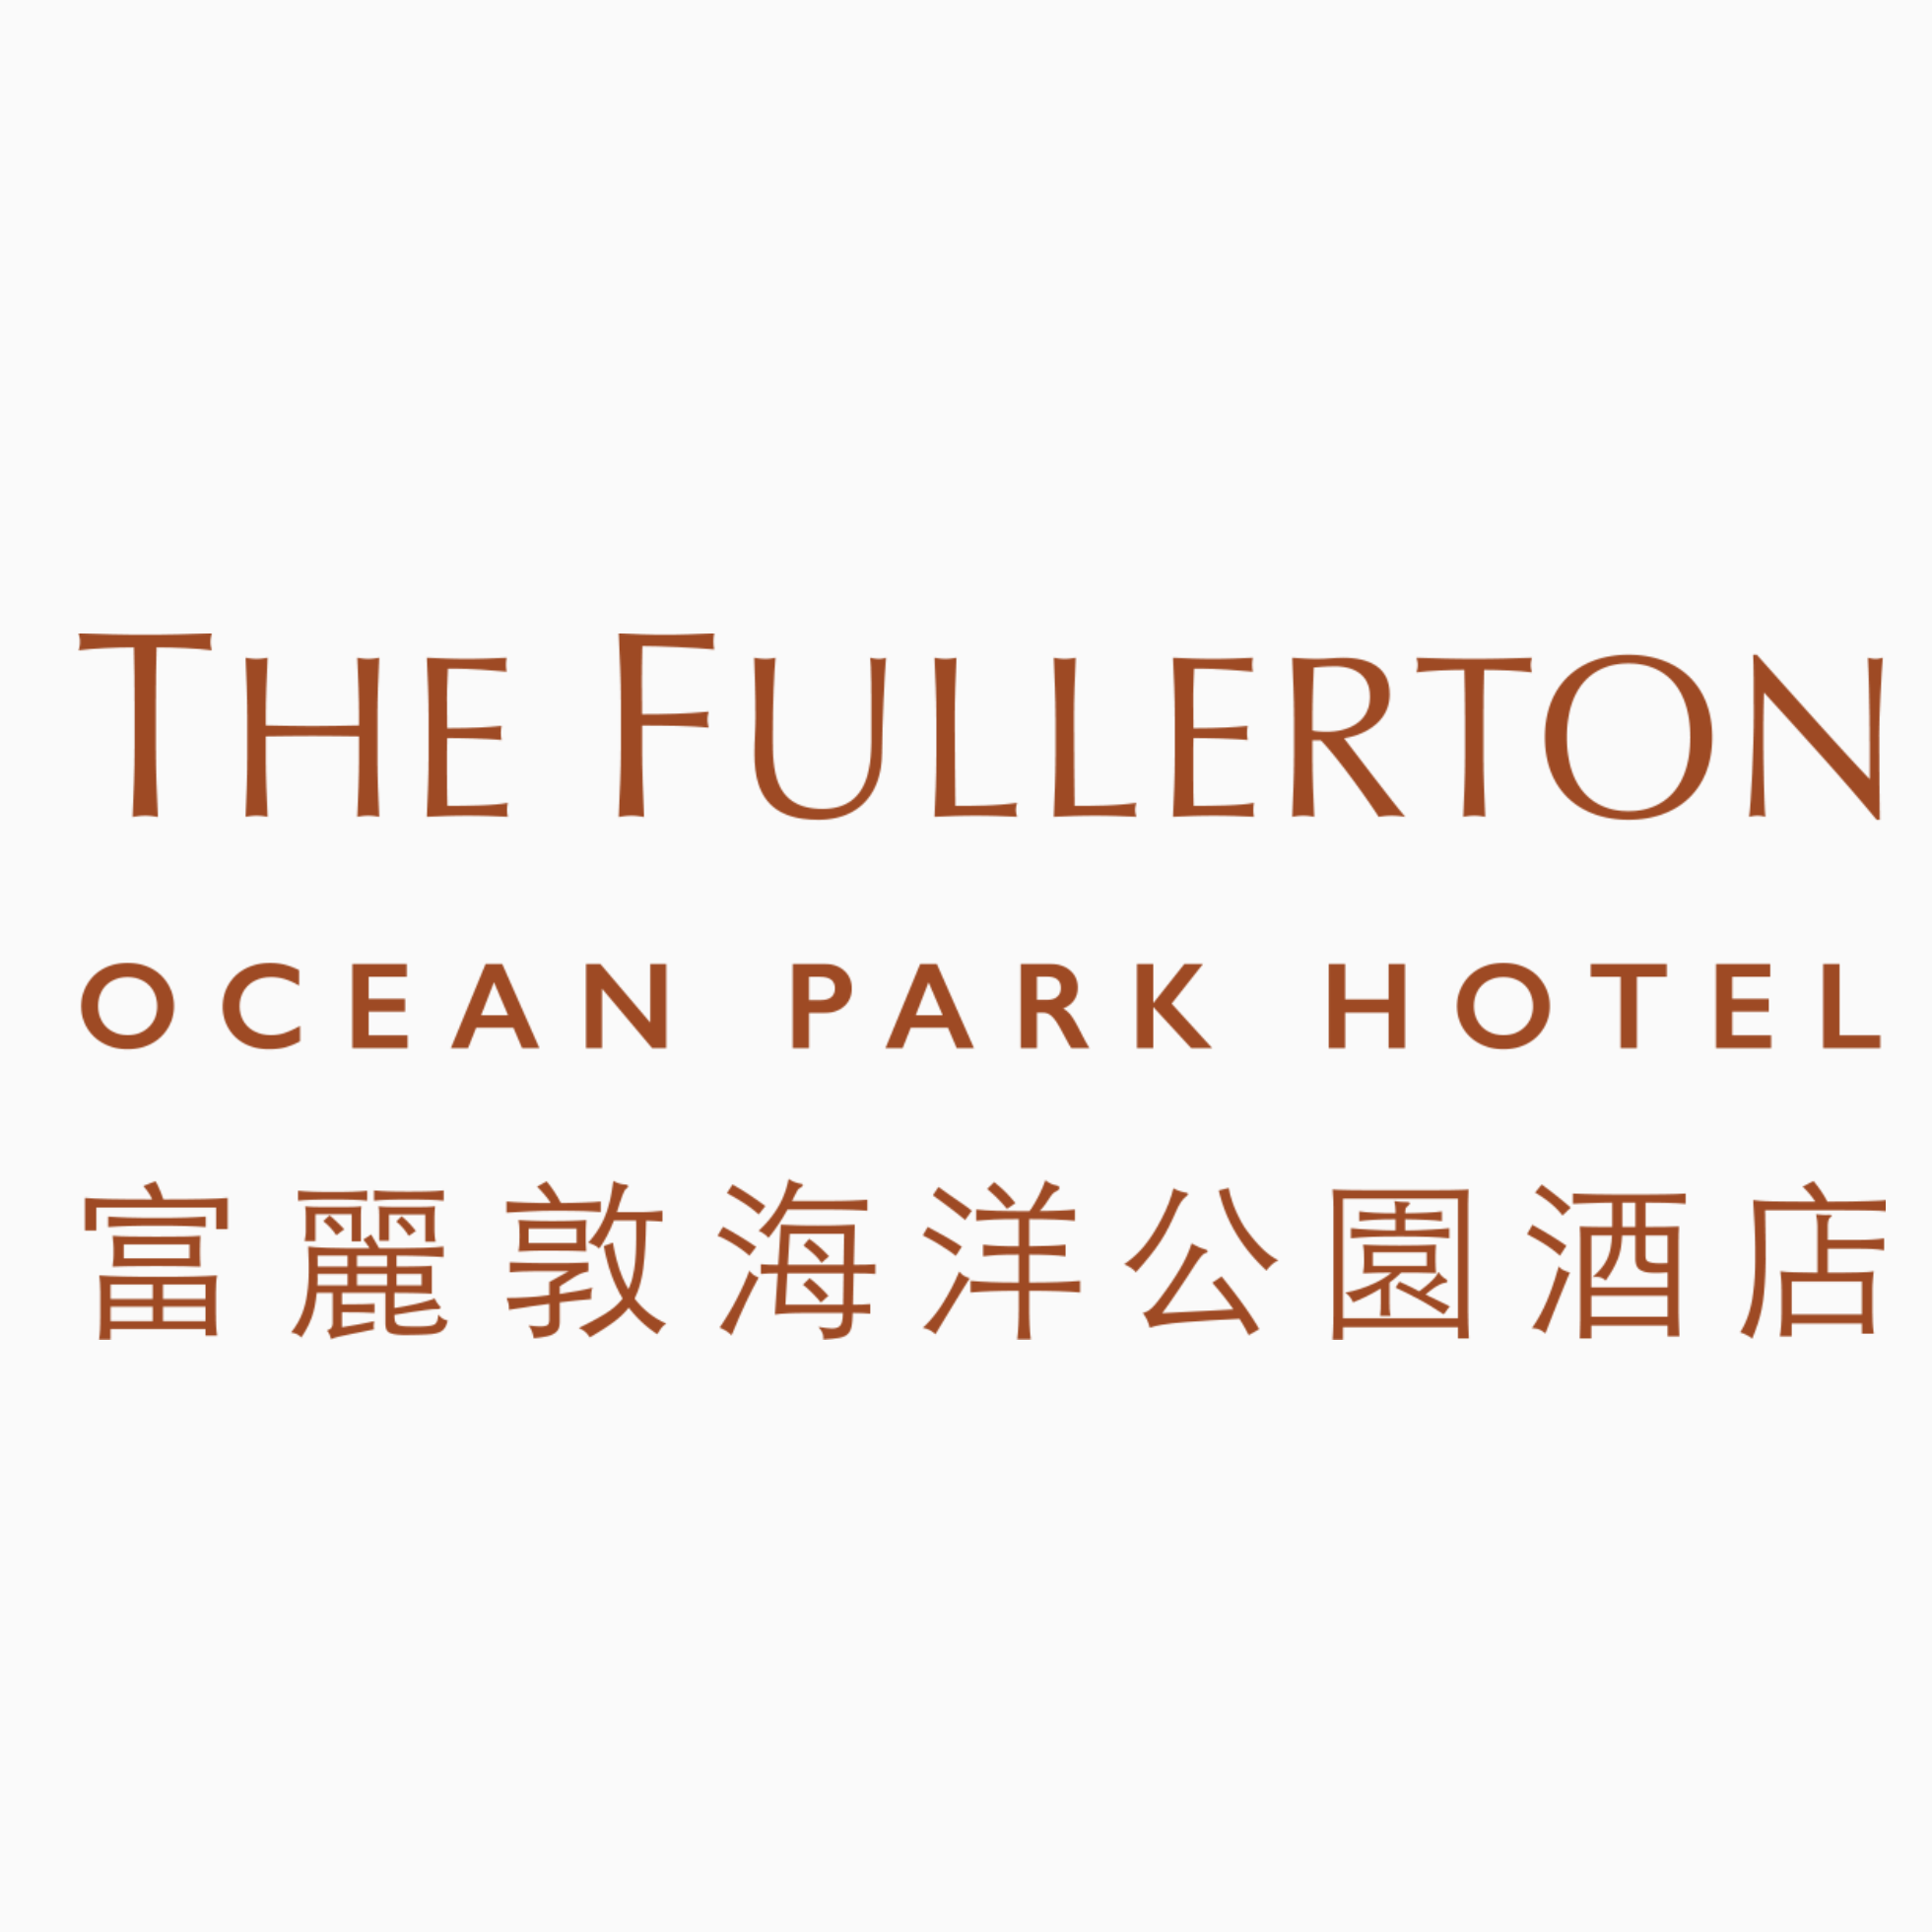 The Fullerton Ocean Park Hotel